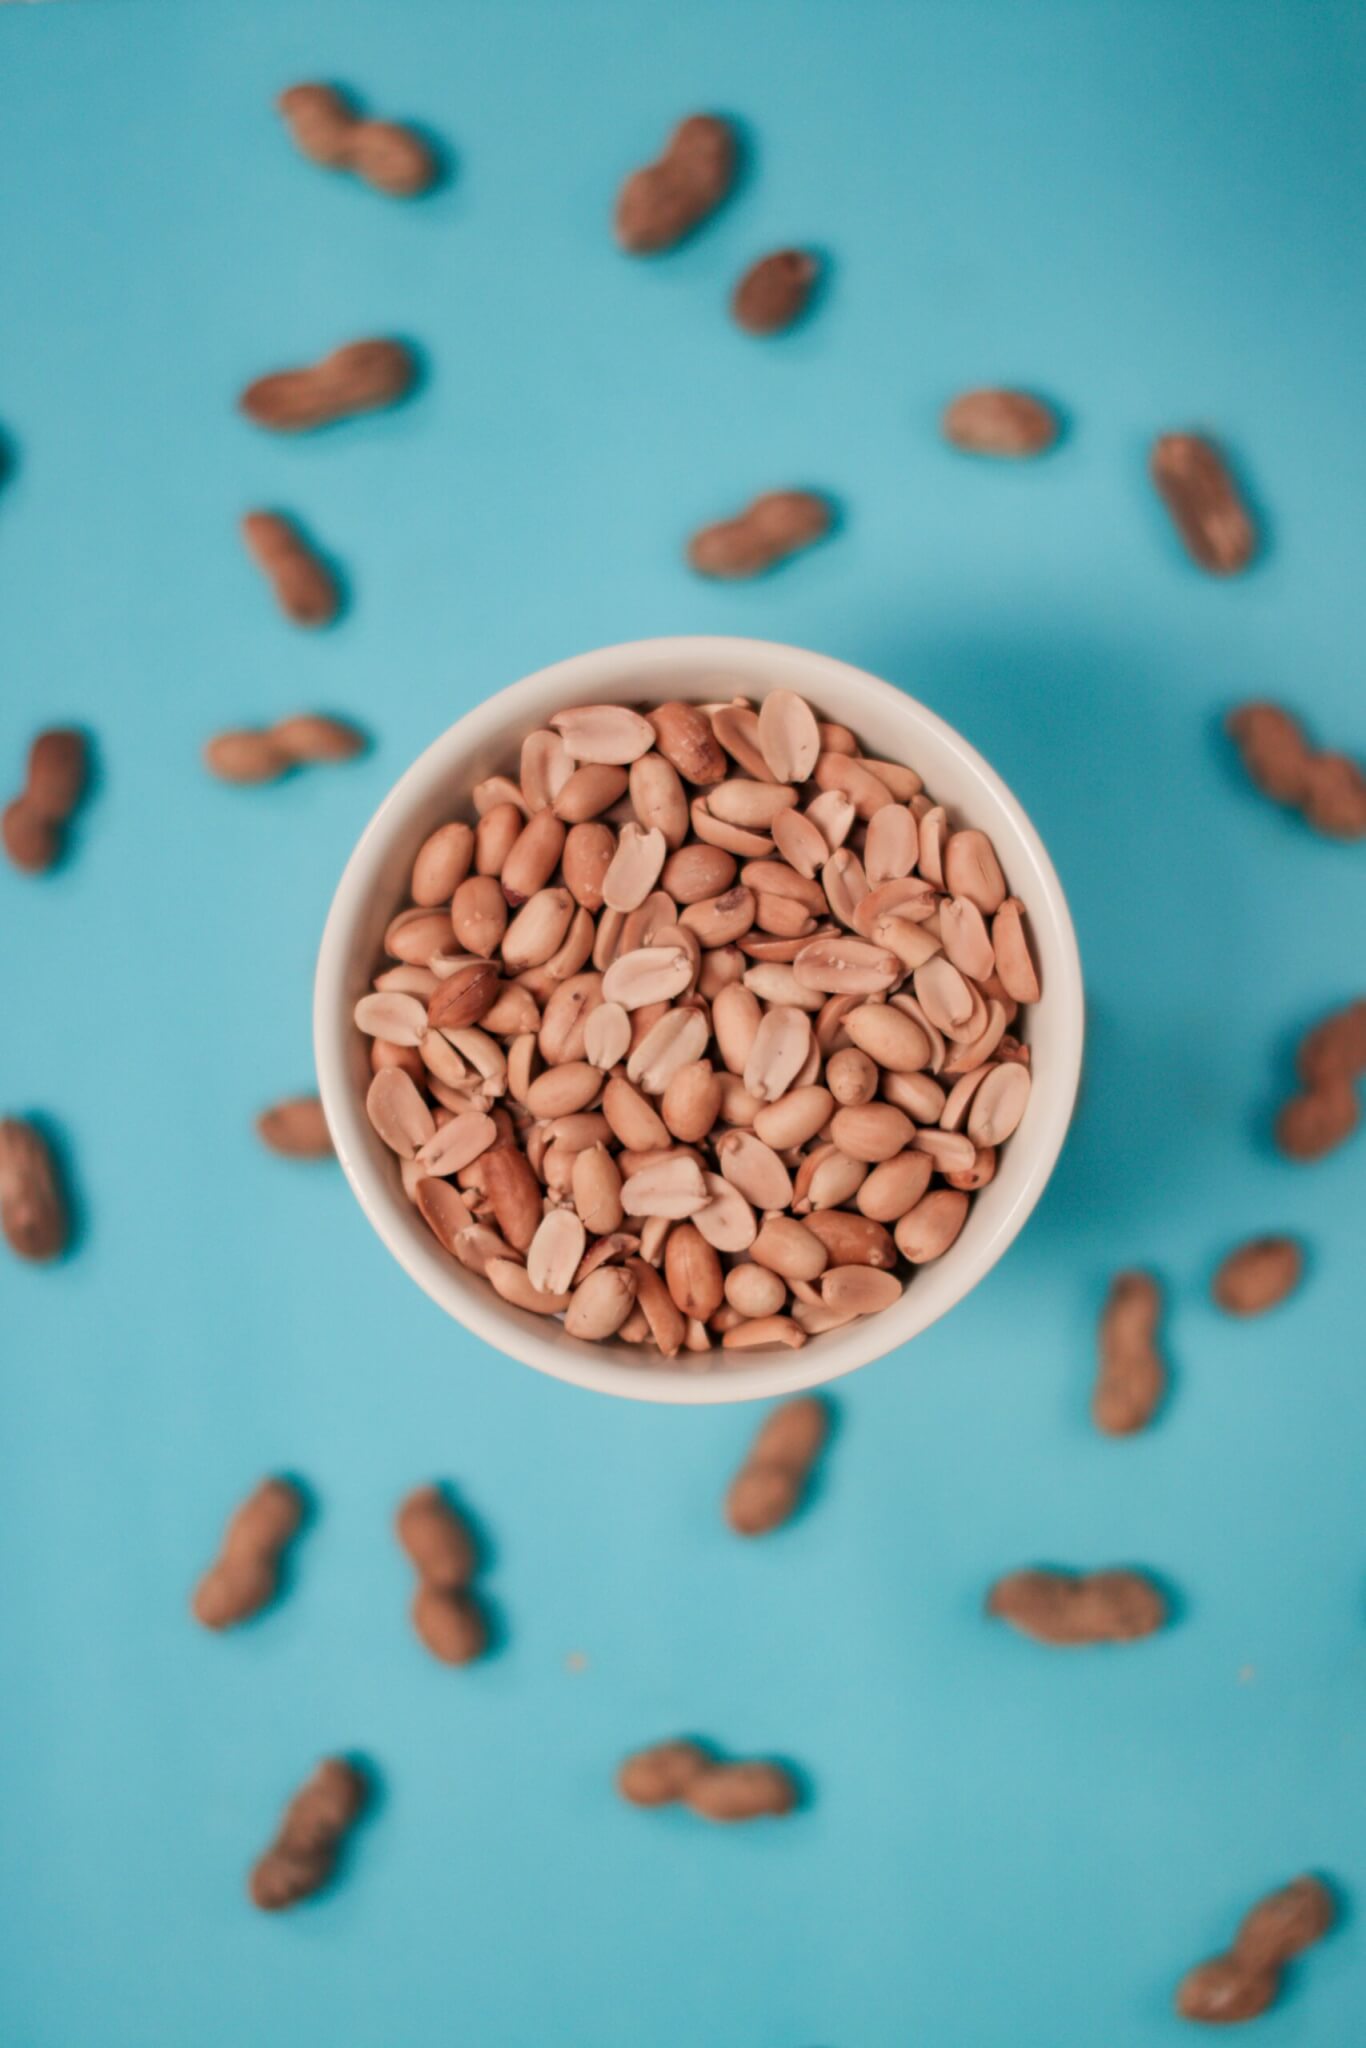 Matérias-primas alimentícias de uso industrial – Amendoim